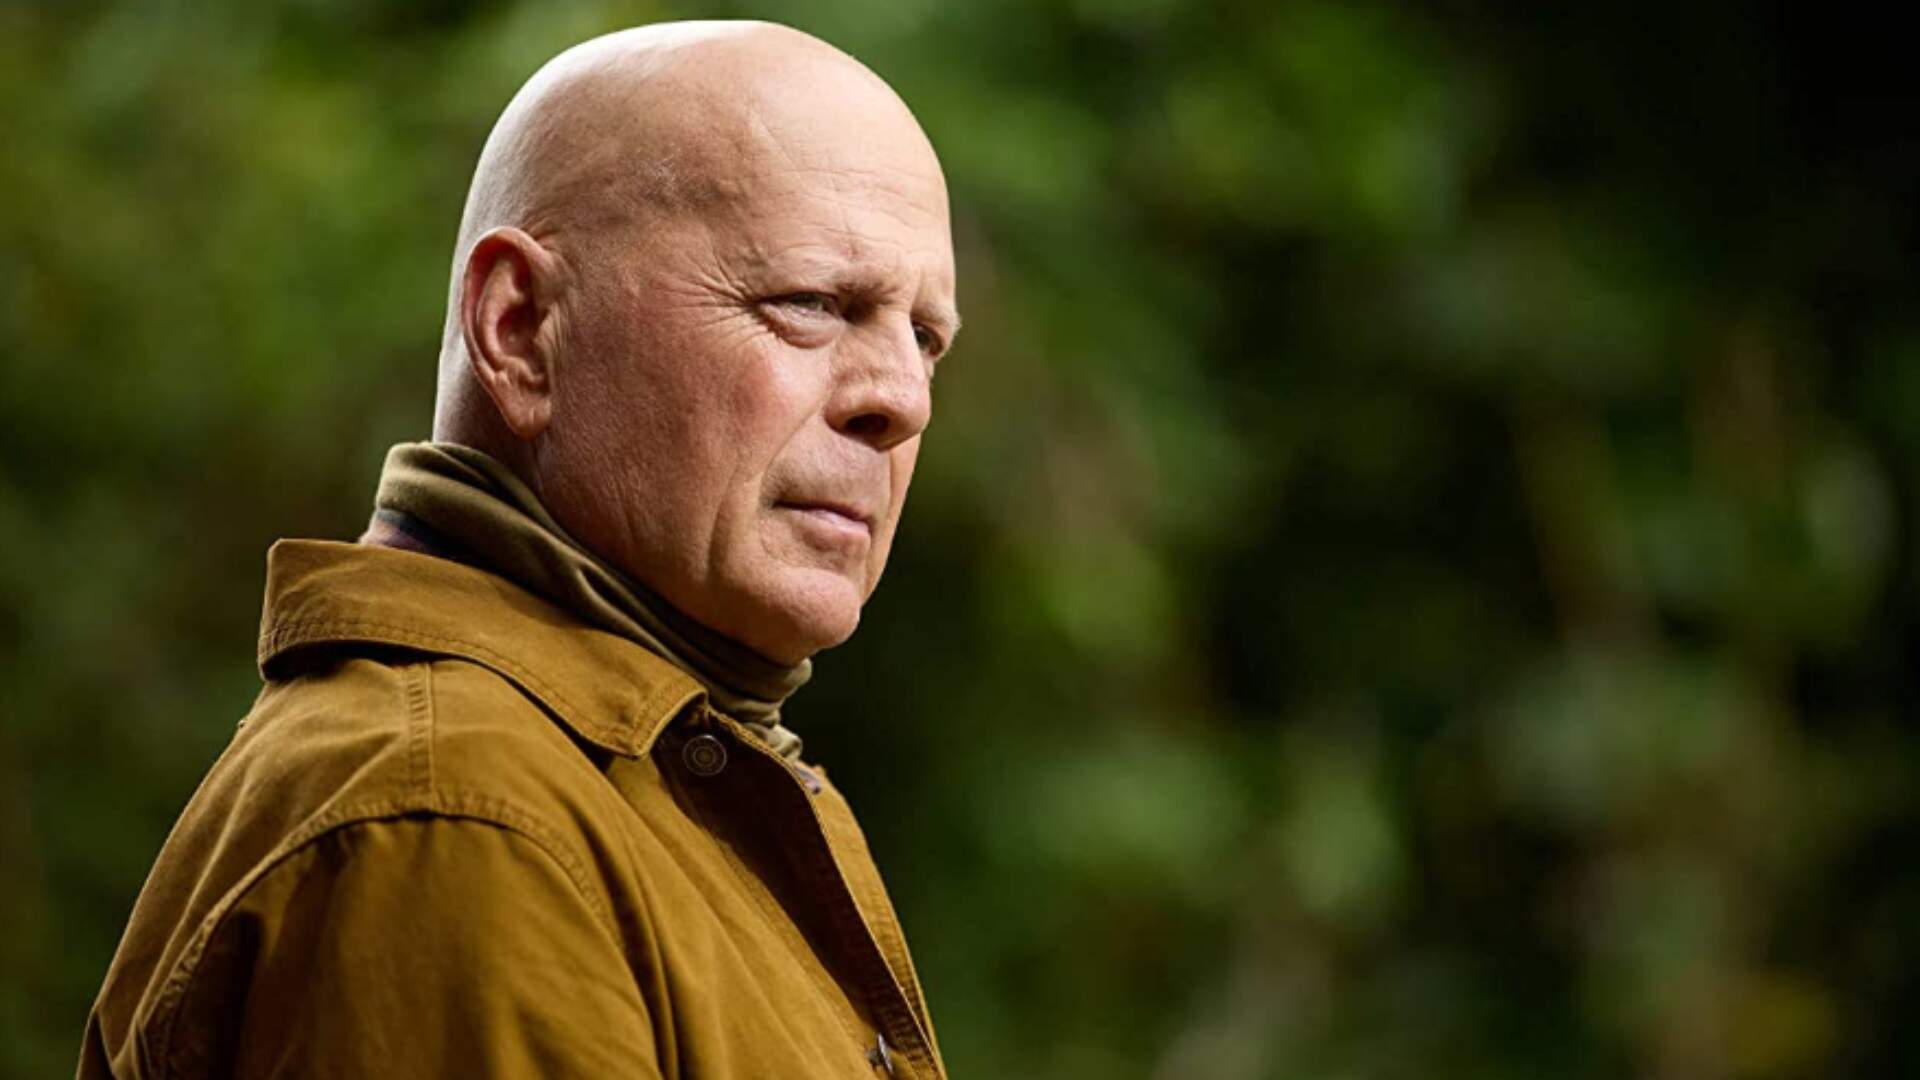 Protagonista de “Duro de Matar”, Bruce Willis, é diagnosticado com demência